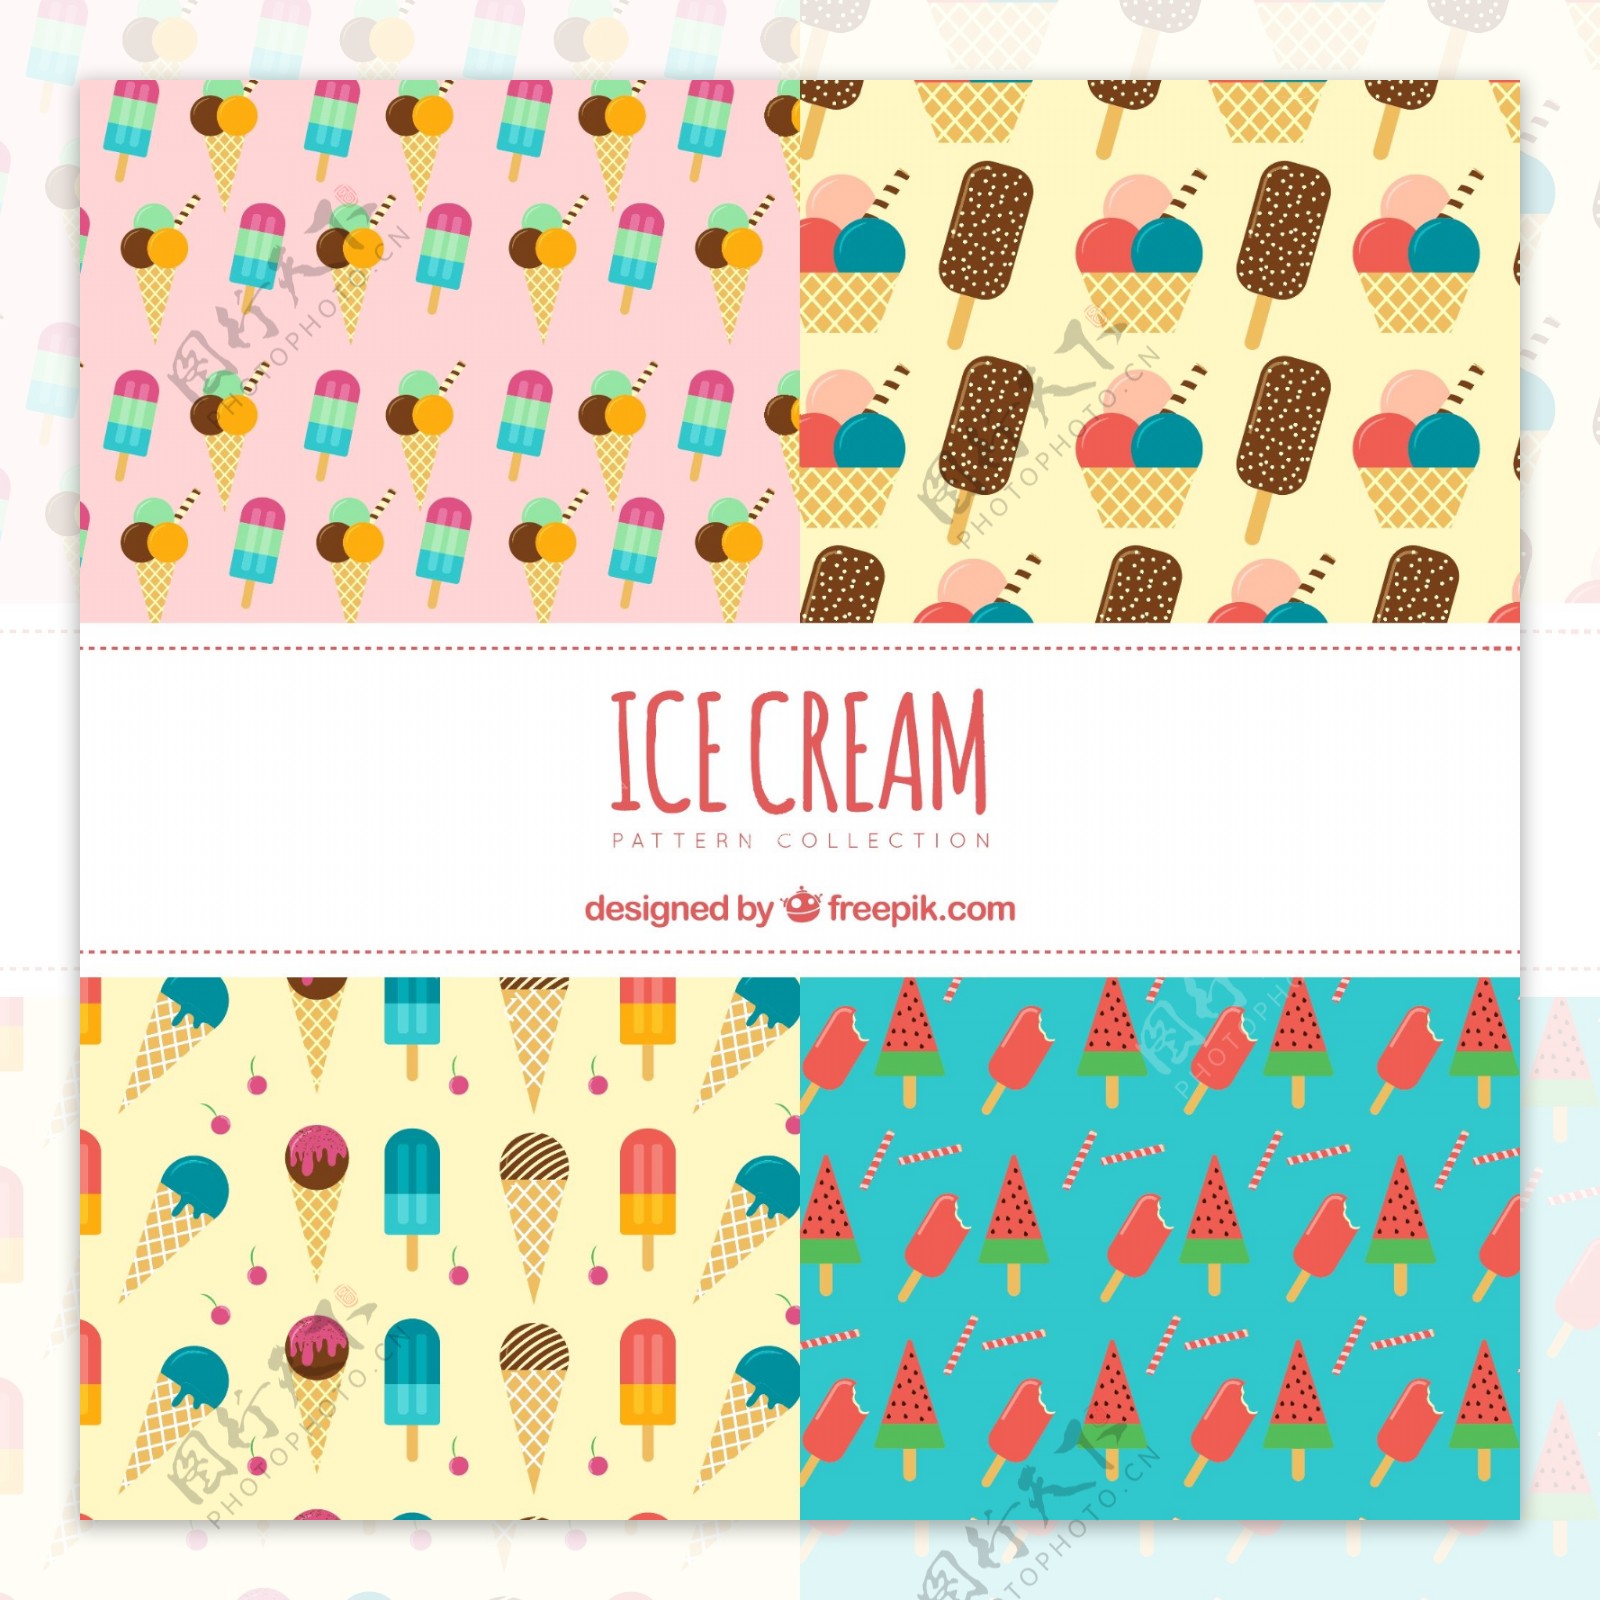 平面设计中的冰淇淋图案